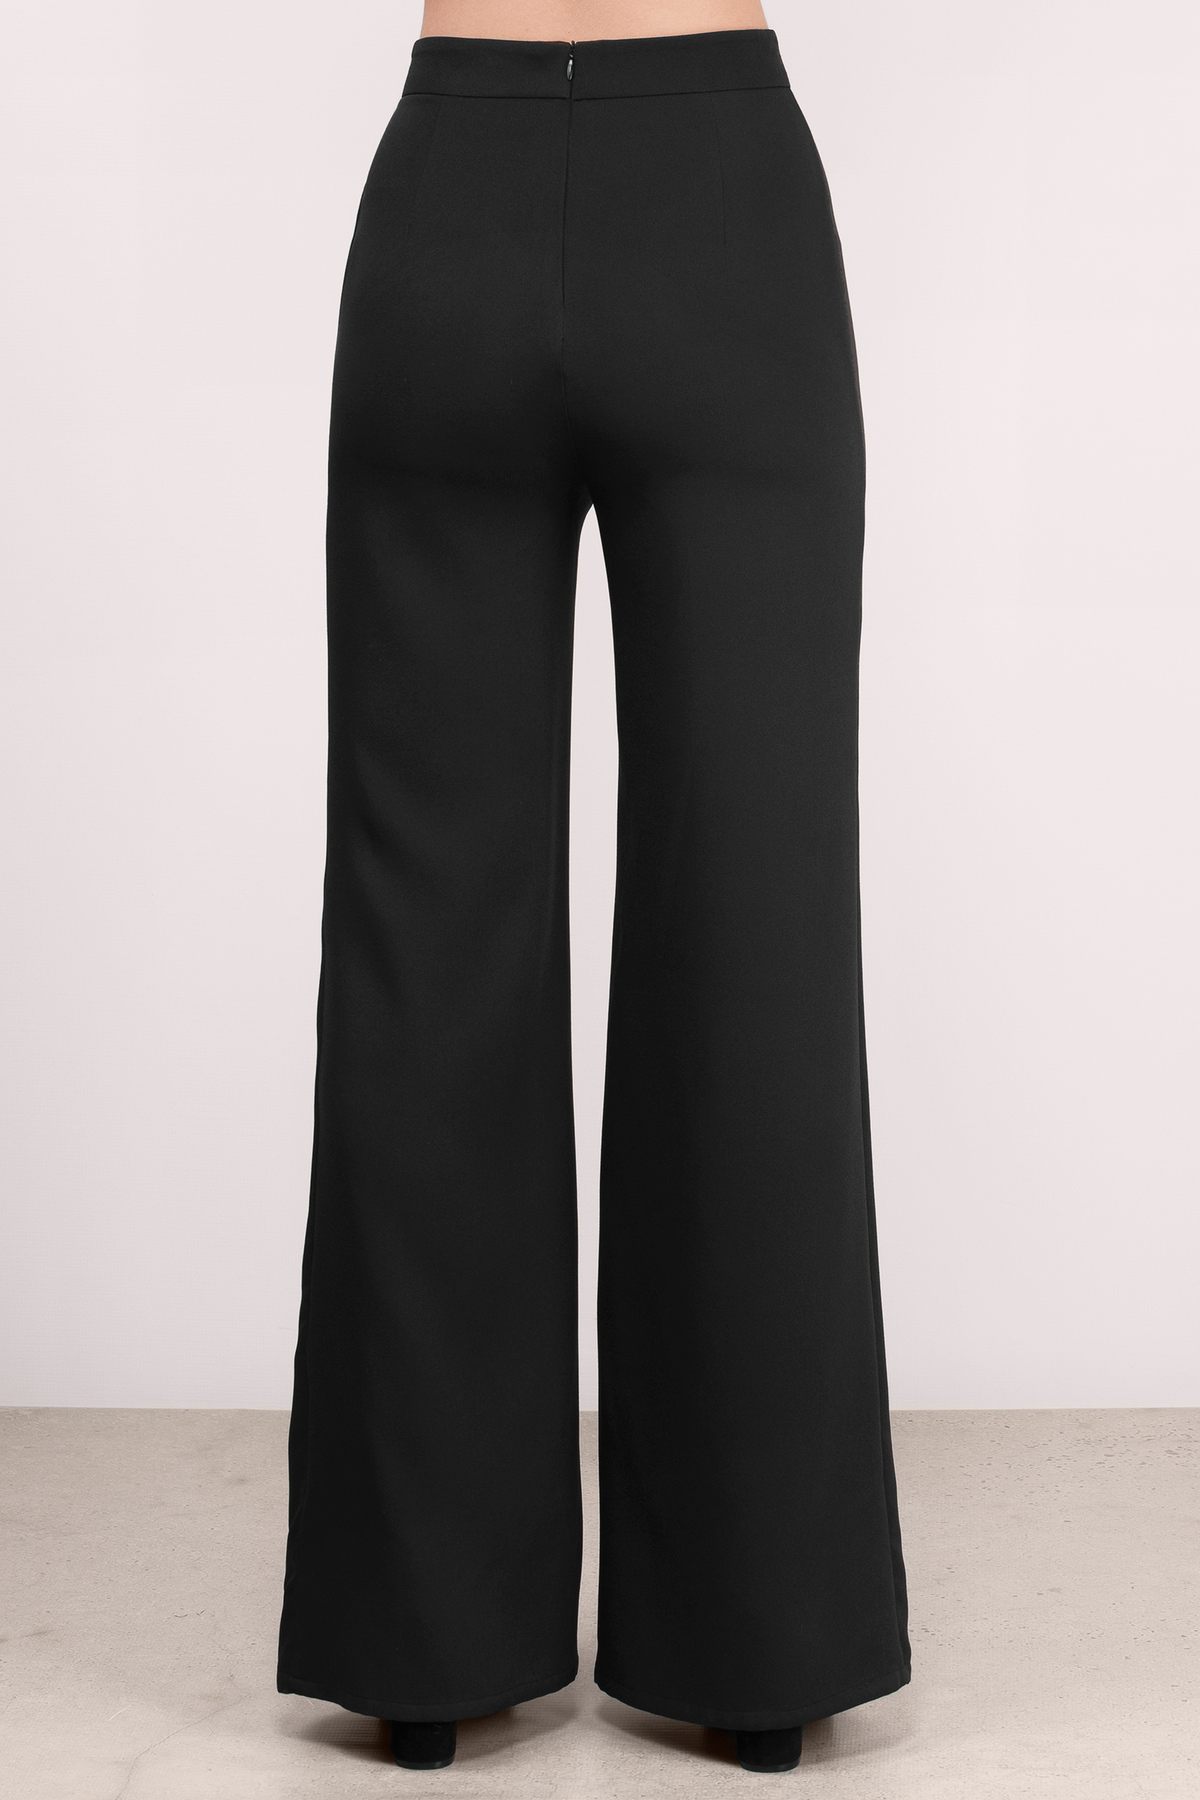 Madison Wide Leg Pants in Black - $48 | Tobi US